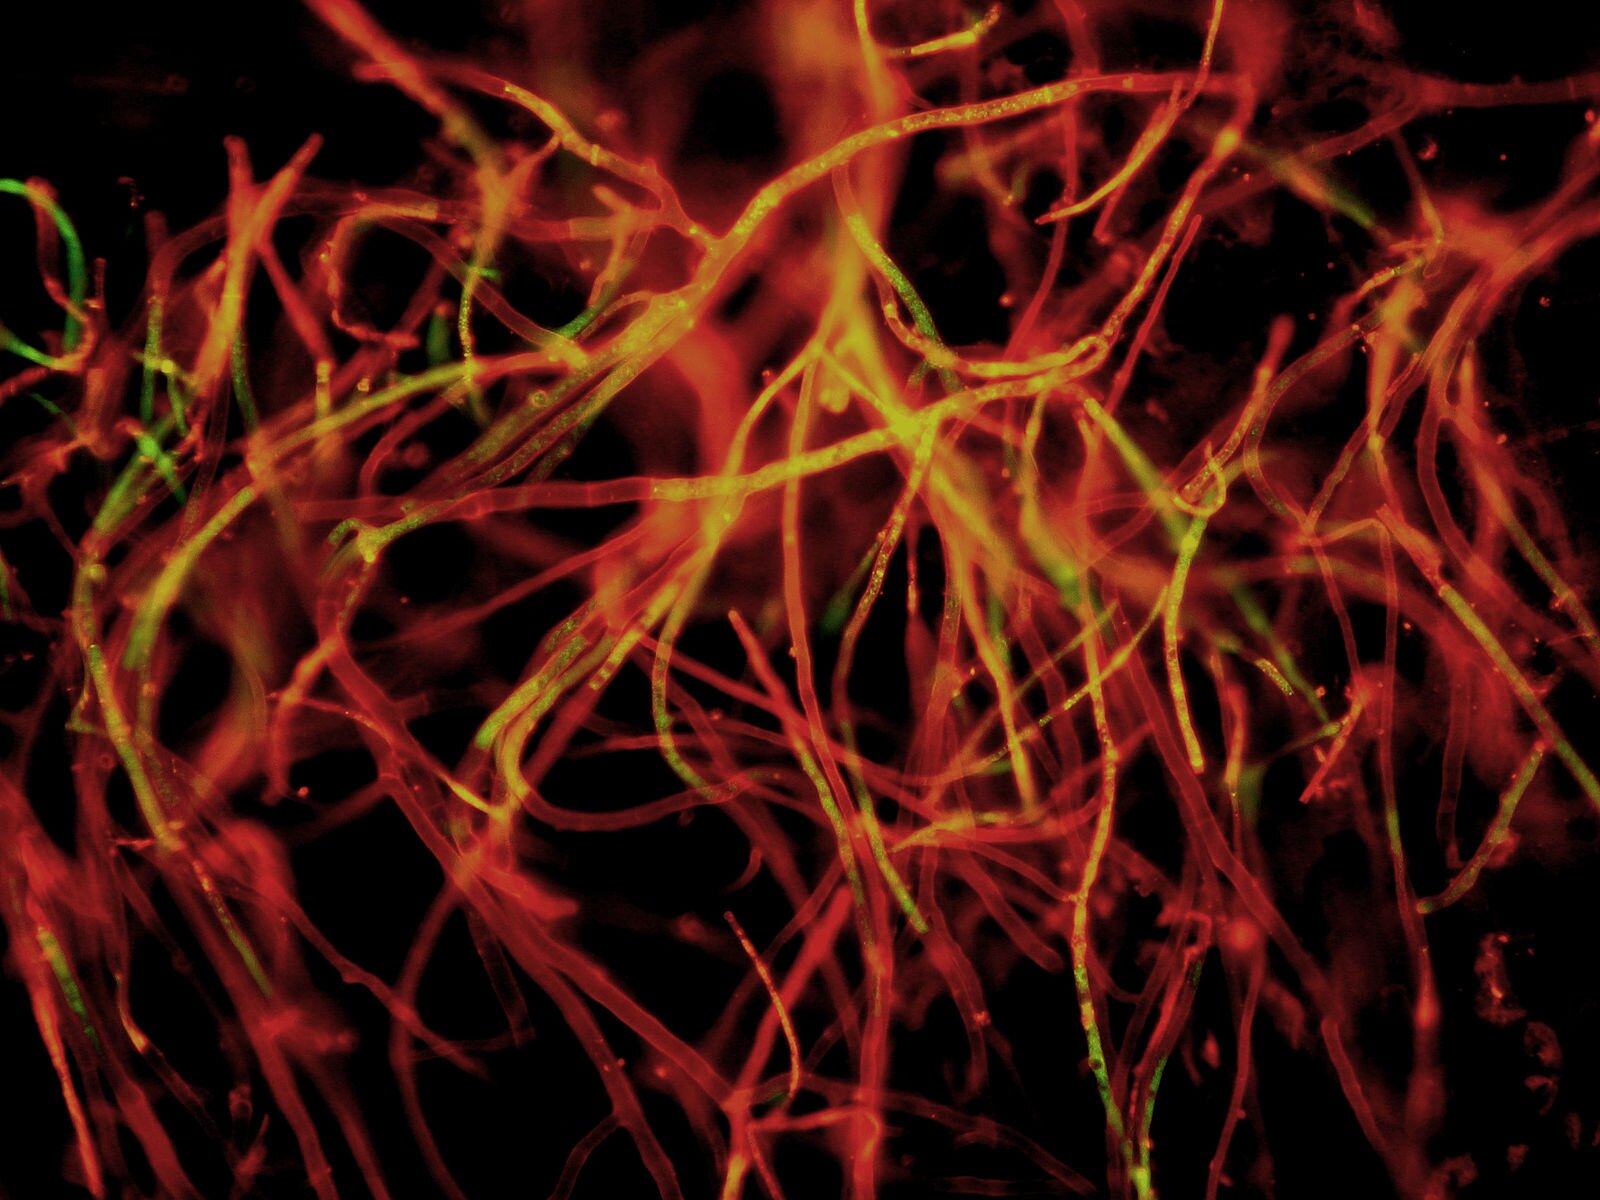 Soppen spinner sine tråder overalt. I dette mycelet er områder med høy metabolsk aktivitet – der næringsstoffer omdannes – merket med fluorescerende farge. Bildet er tatt med et høyoppløselig kamera festet til et fluorescensmikroskop. (Illustrasjonsfoto: Christian Scheckhuber/wikimedia commons)